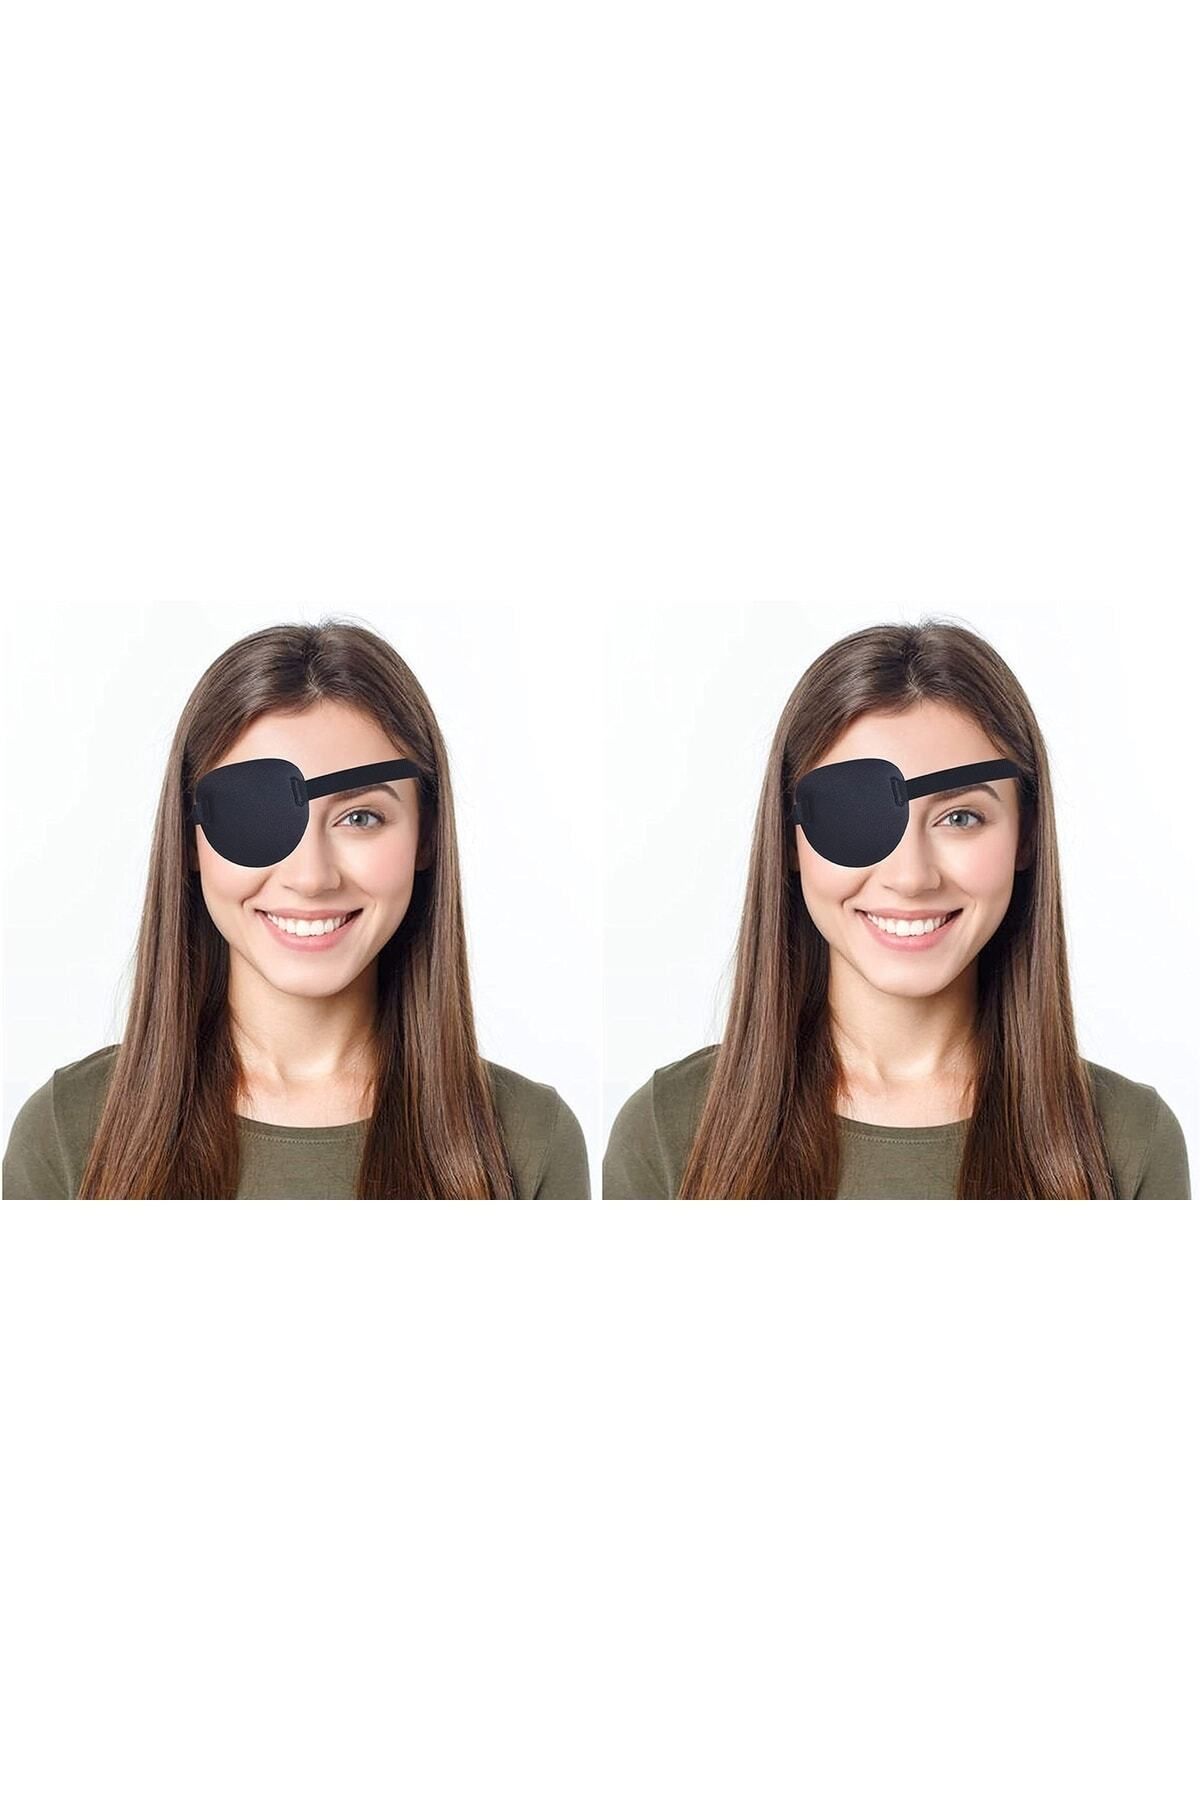 ARWEX 2 Adet Göz Kapama Bandı Tek Göz Korsan Bandı Göz Bandajı Göz Tembelliği Bandı Göz Pedi Göz Bandı